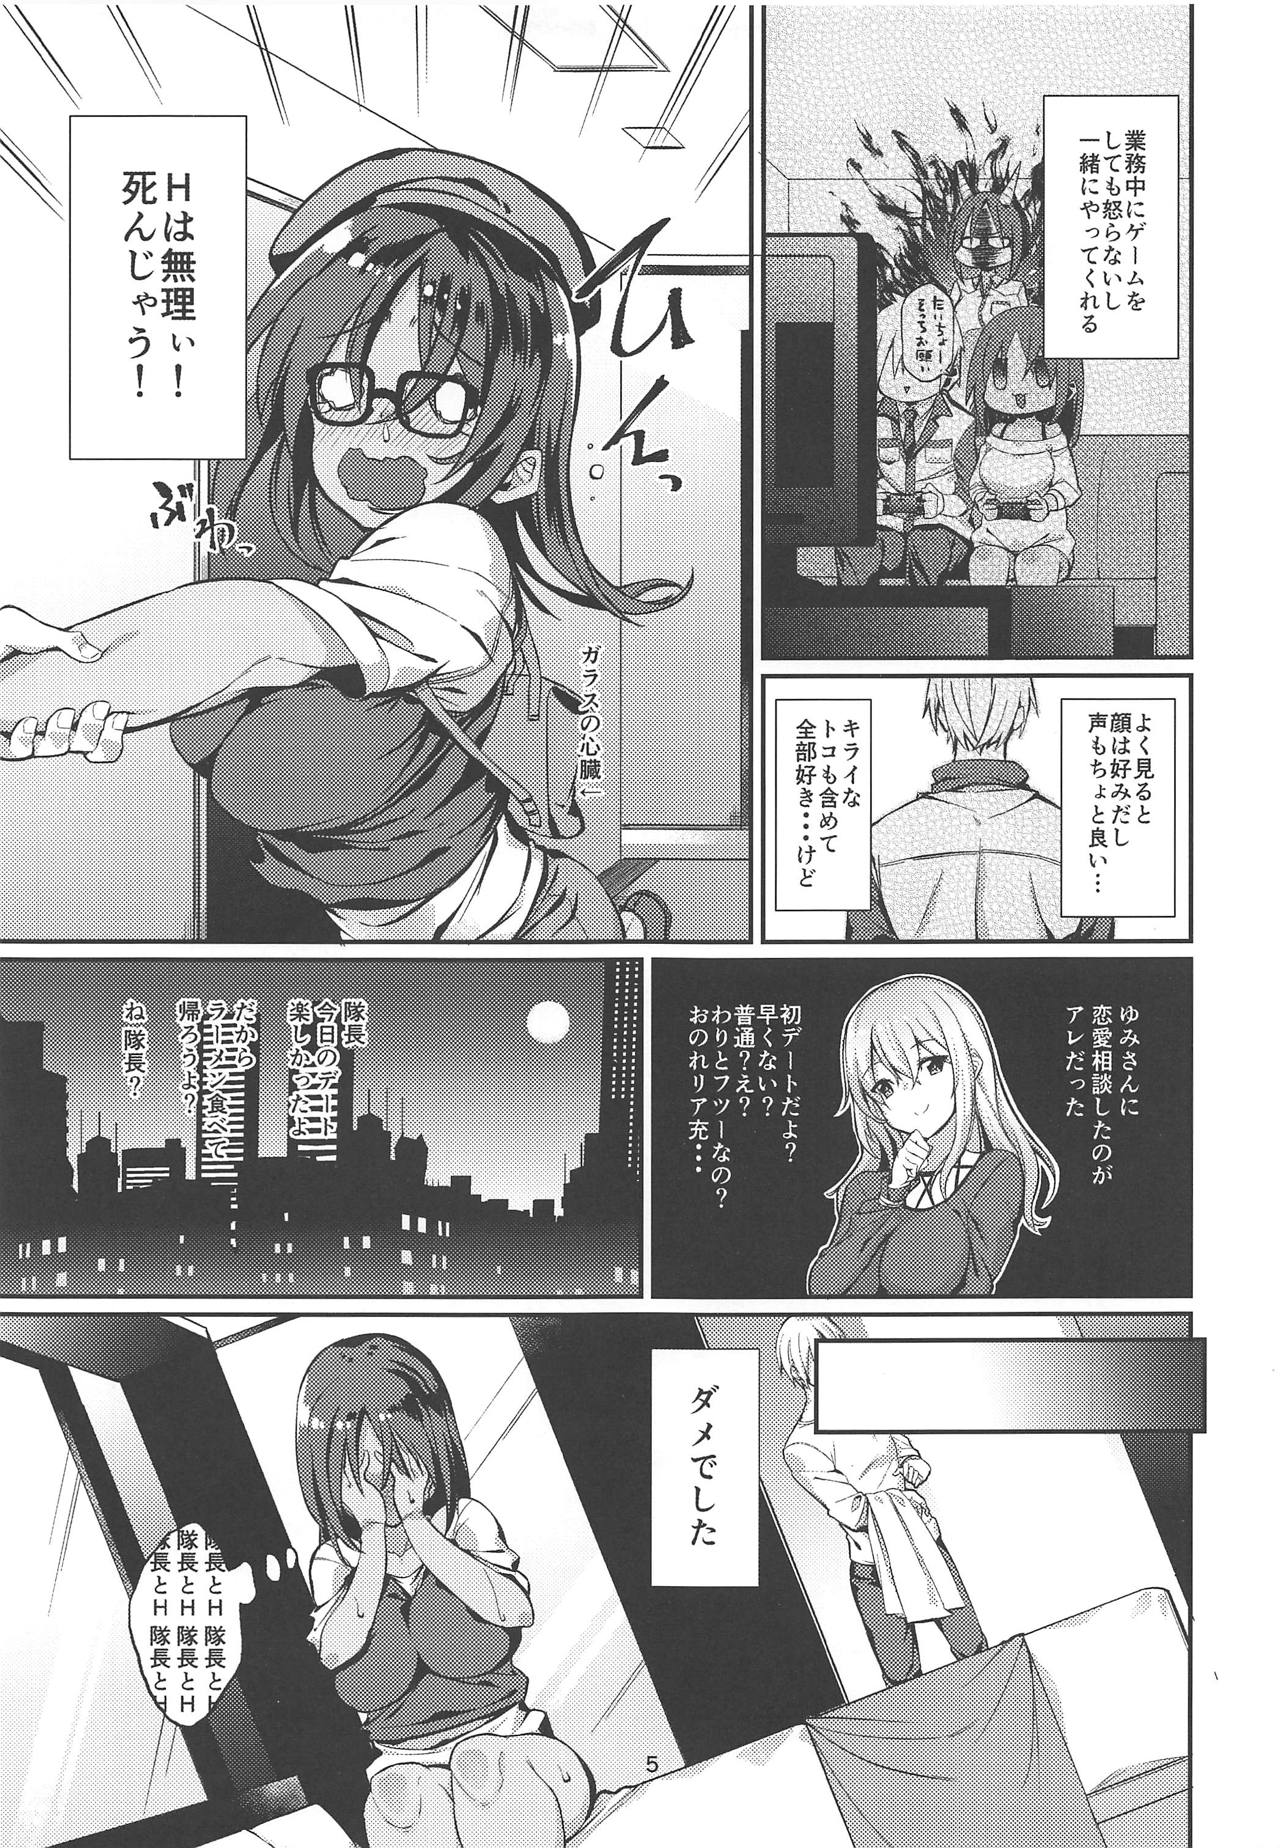 【アリスギア】シタラちゃんが隊長と初体験セックスを繰り広げる♡の画像4枚目